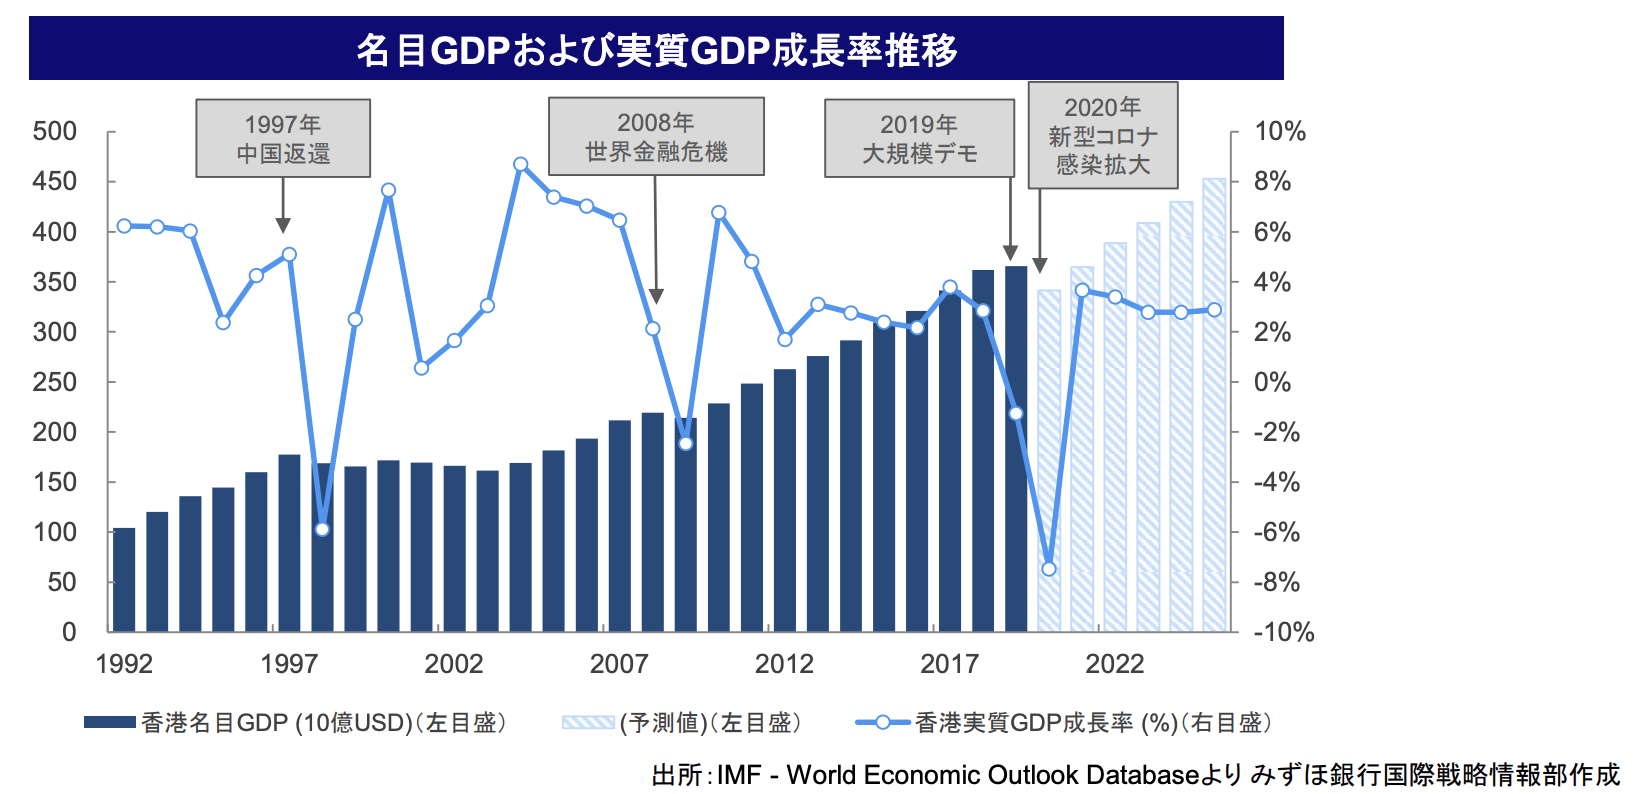 香港の名目GDPおよび実質GDP成長率推移